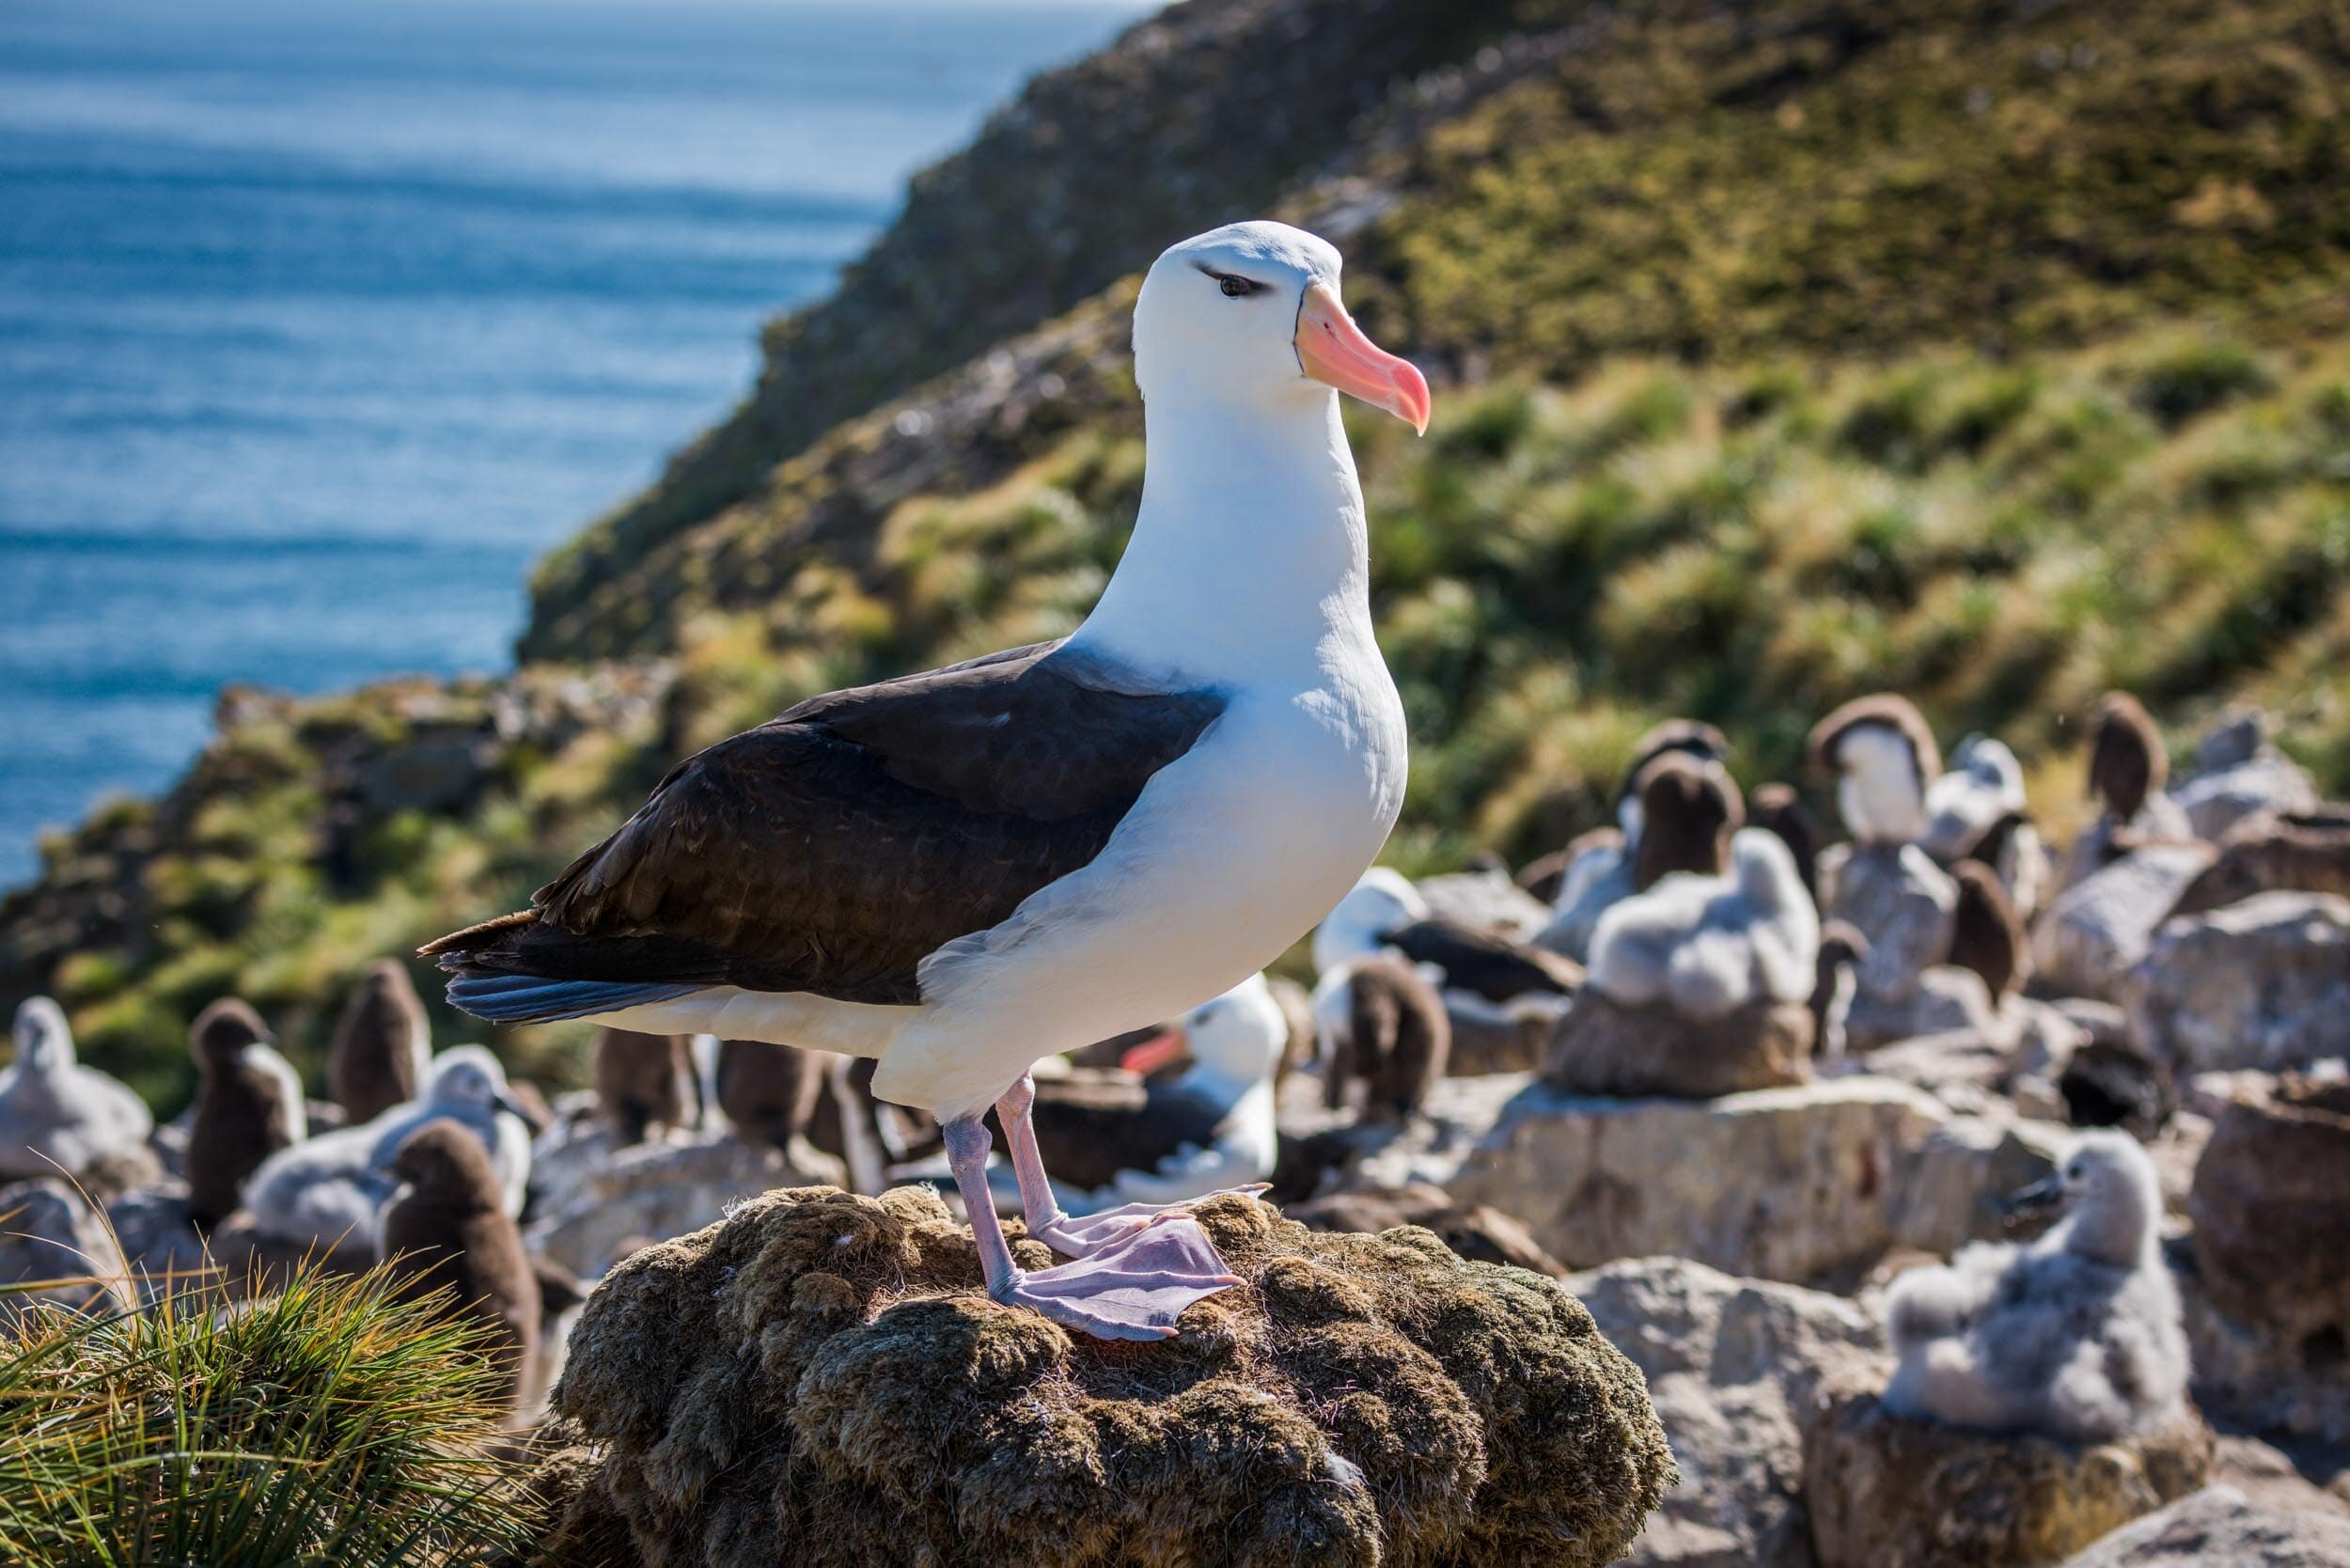 Black-browed albatross standing on rock in colony: 55 downloads